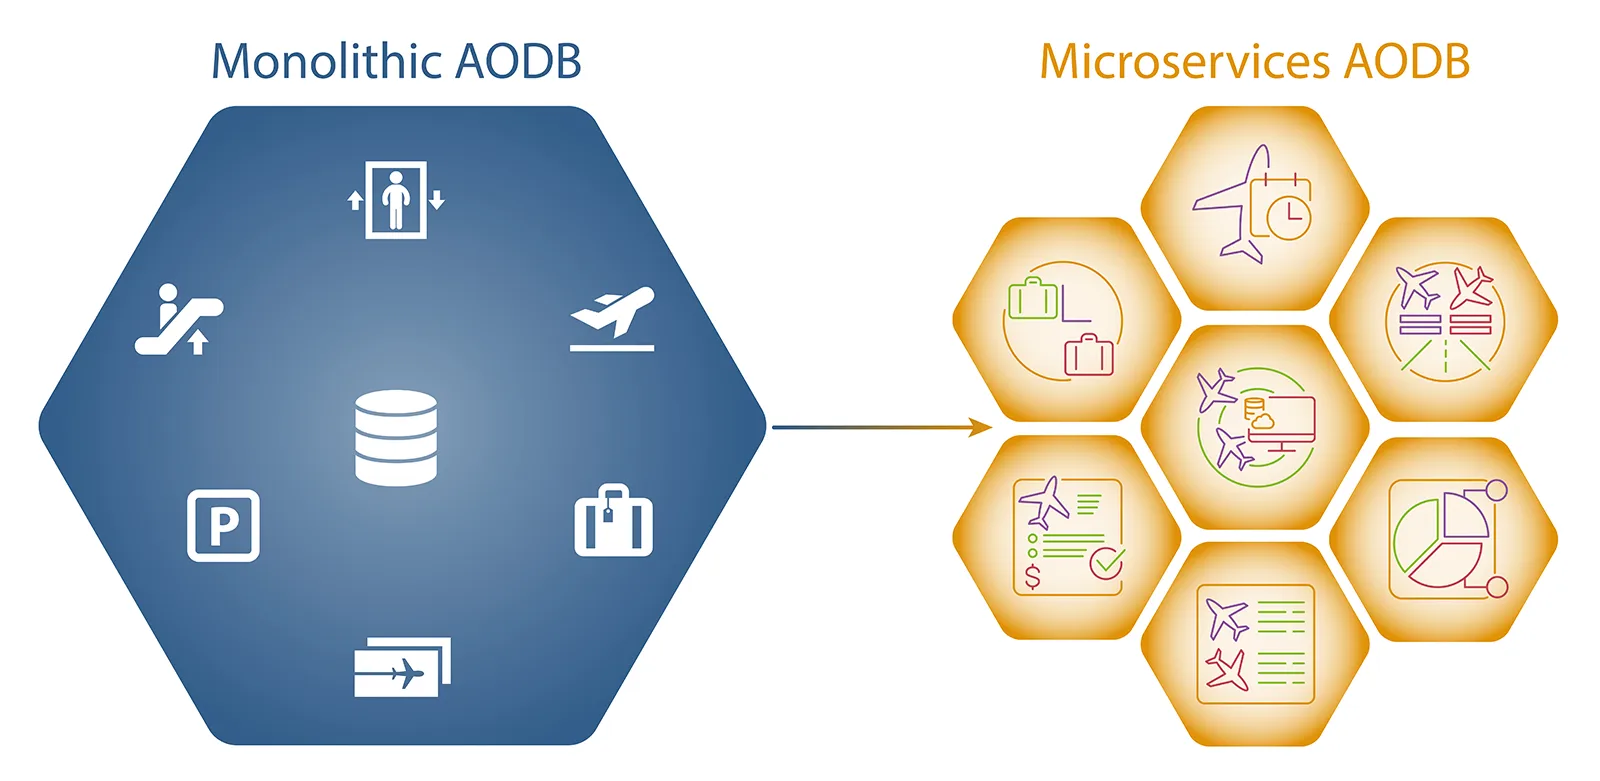 monolith and microservices aodb comparison